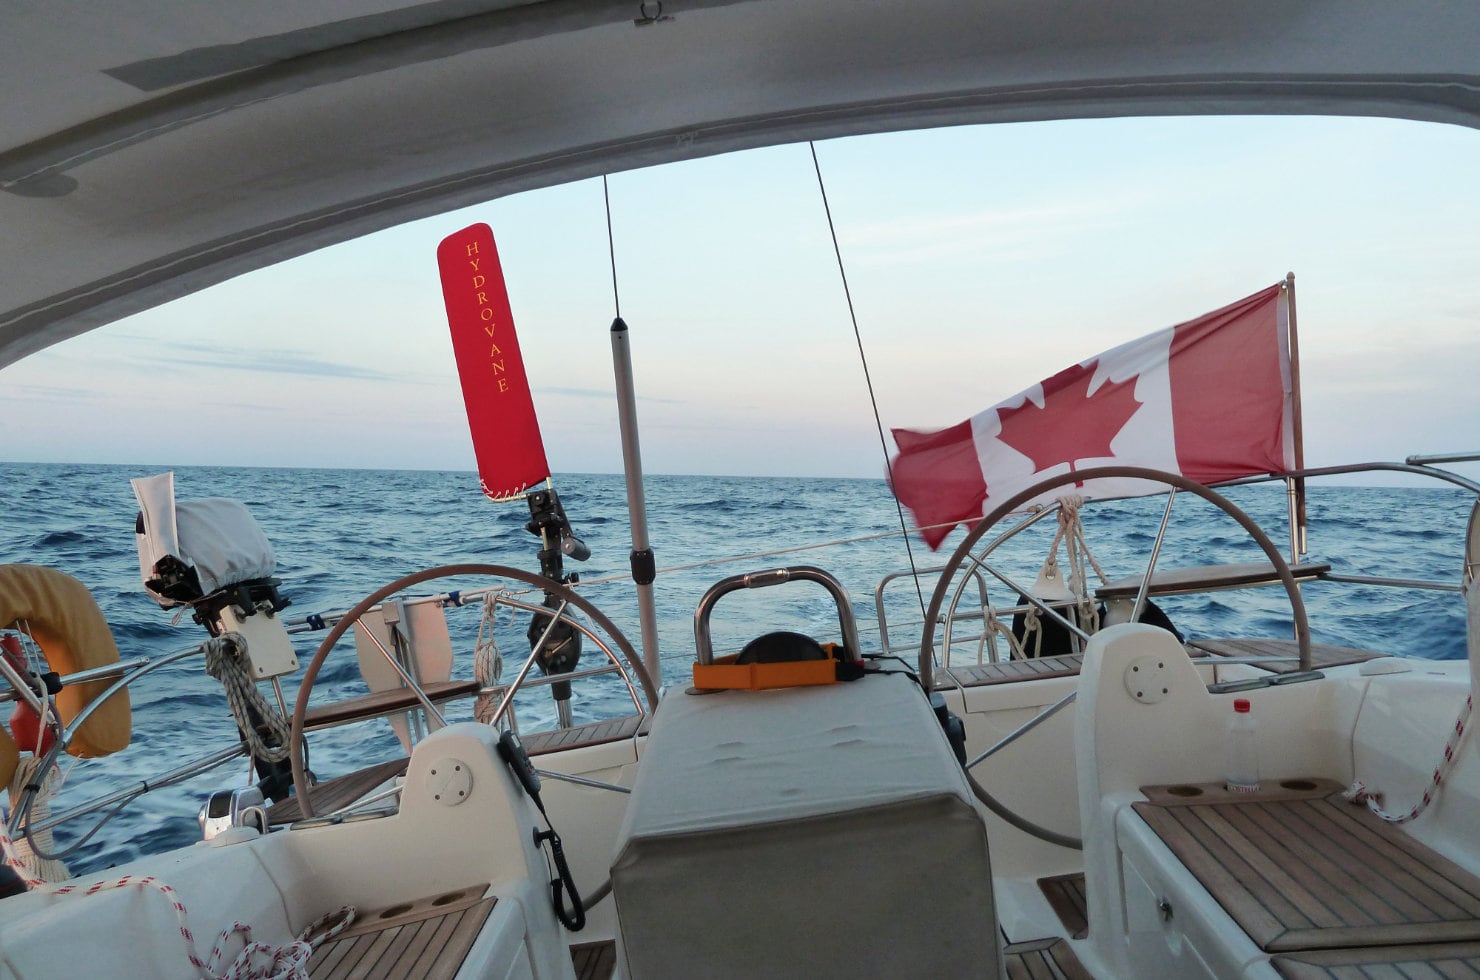 クルーザーの中から船の後ろの海を眺める写真。左にはハイドロベーンの赤いベーンが配備され右にはカナダ国旗が風にはためく